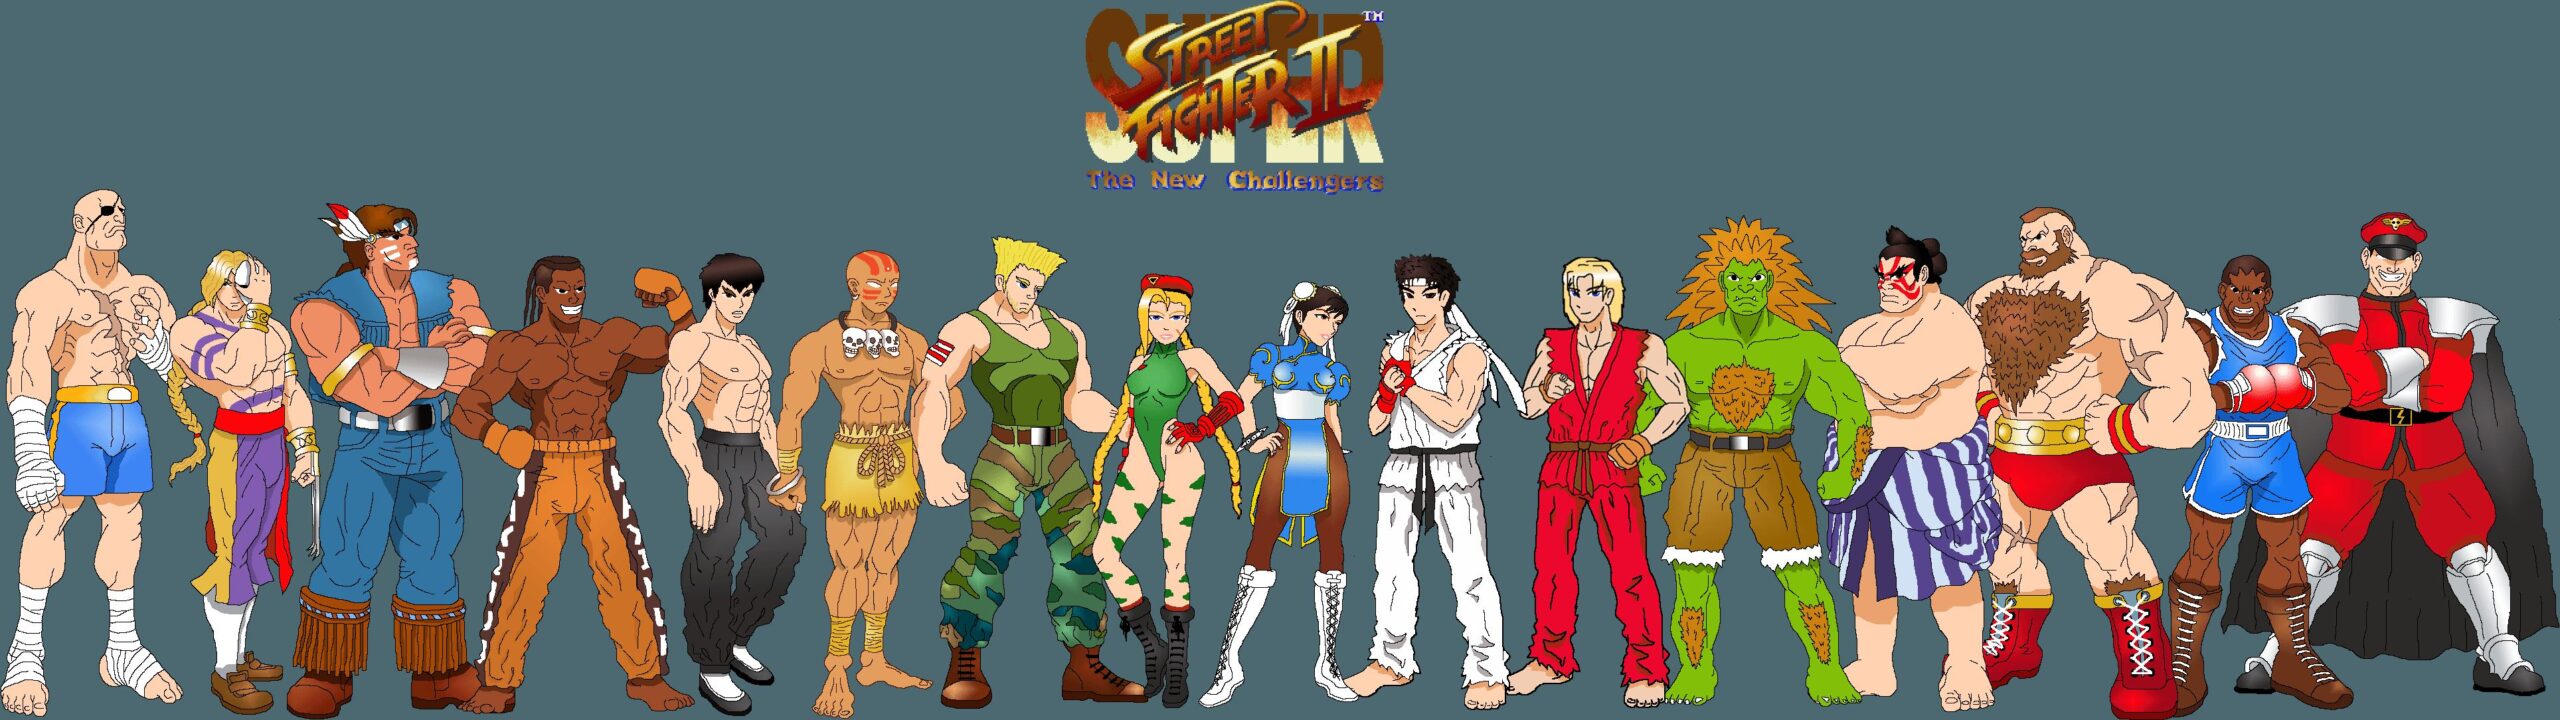 Street Fighter 6 Wallpaper 4K, Luke, Cover Art, Key Art